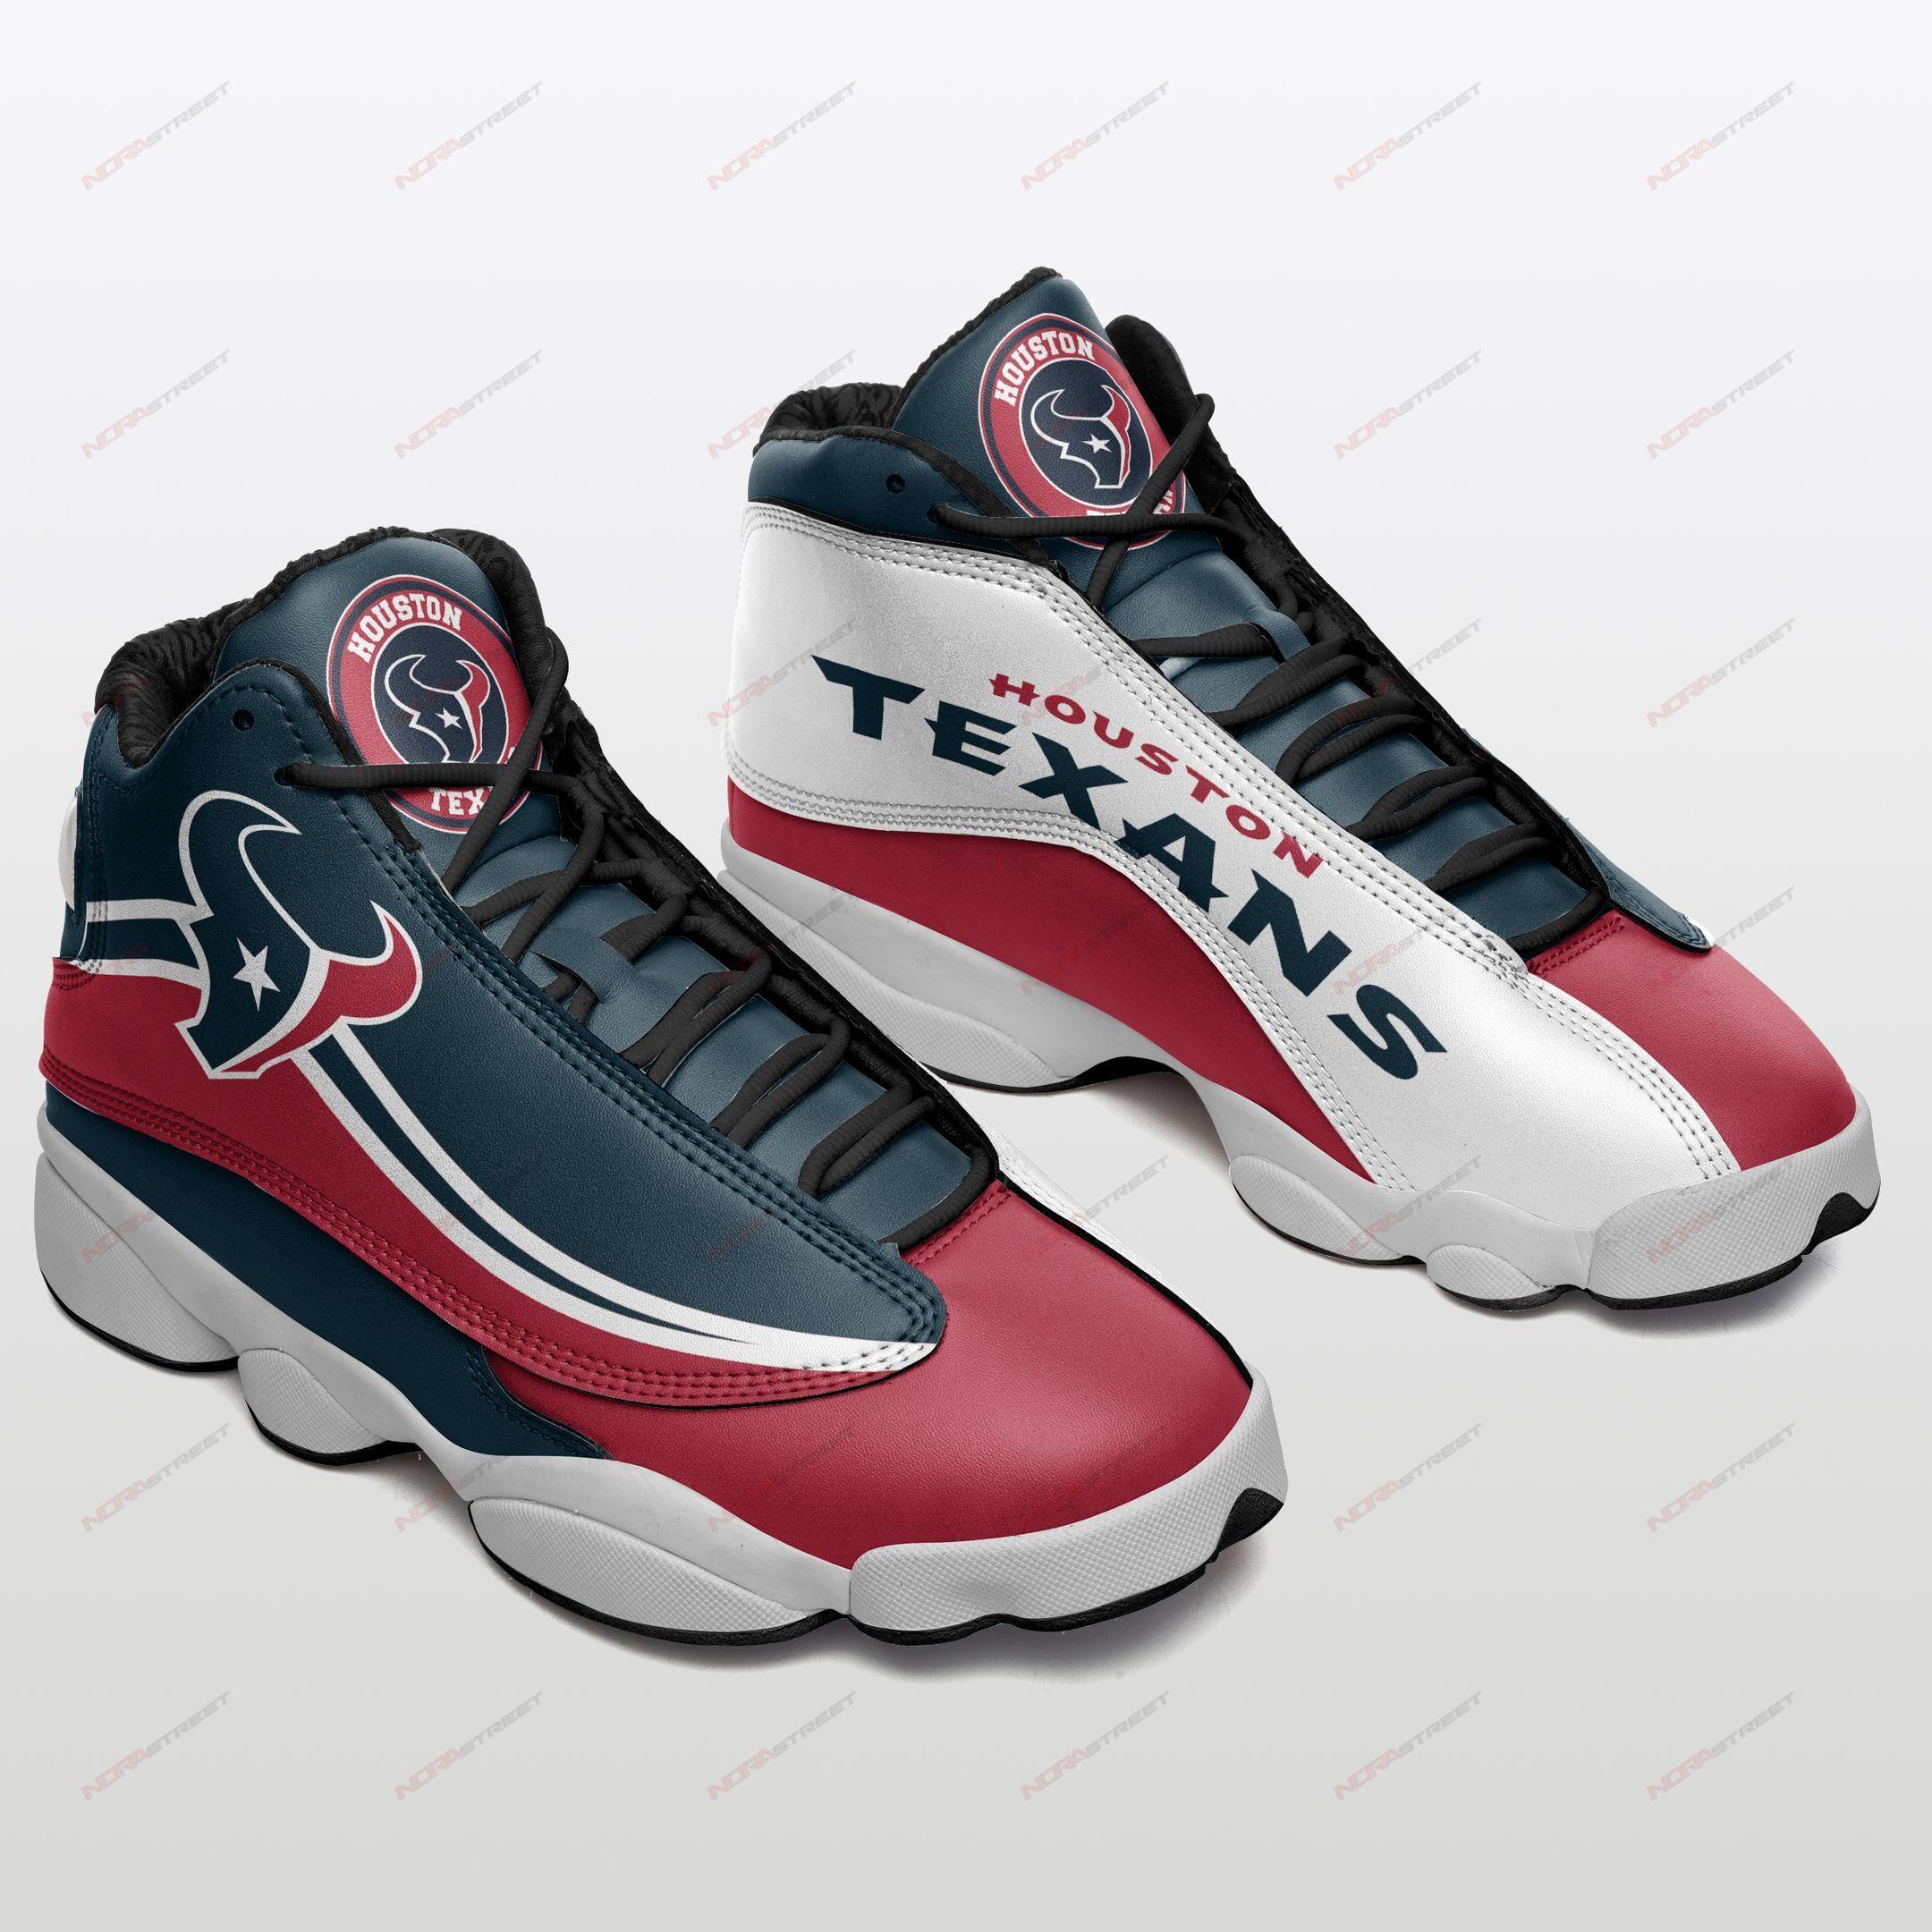 Houston Texans Air Jordan 13 Sneakers Sport Shoes Plus Size